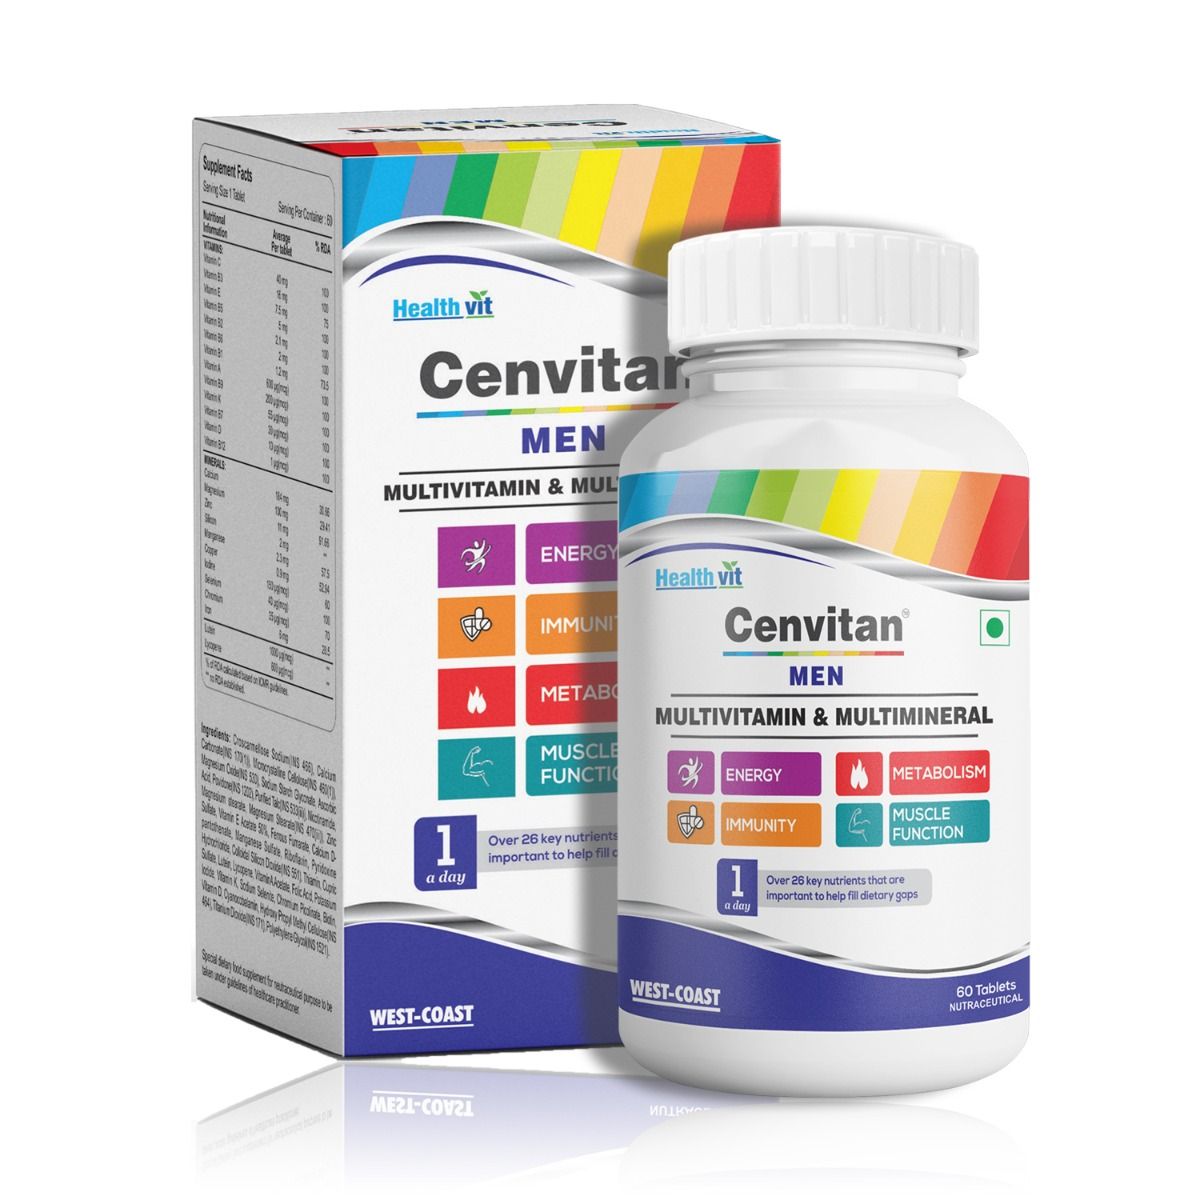 Buy Healthvit Cenvitan Men Multivitamin & Multimineral, 60 Tablets Online